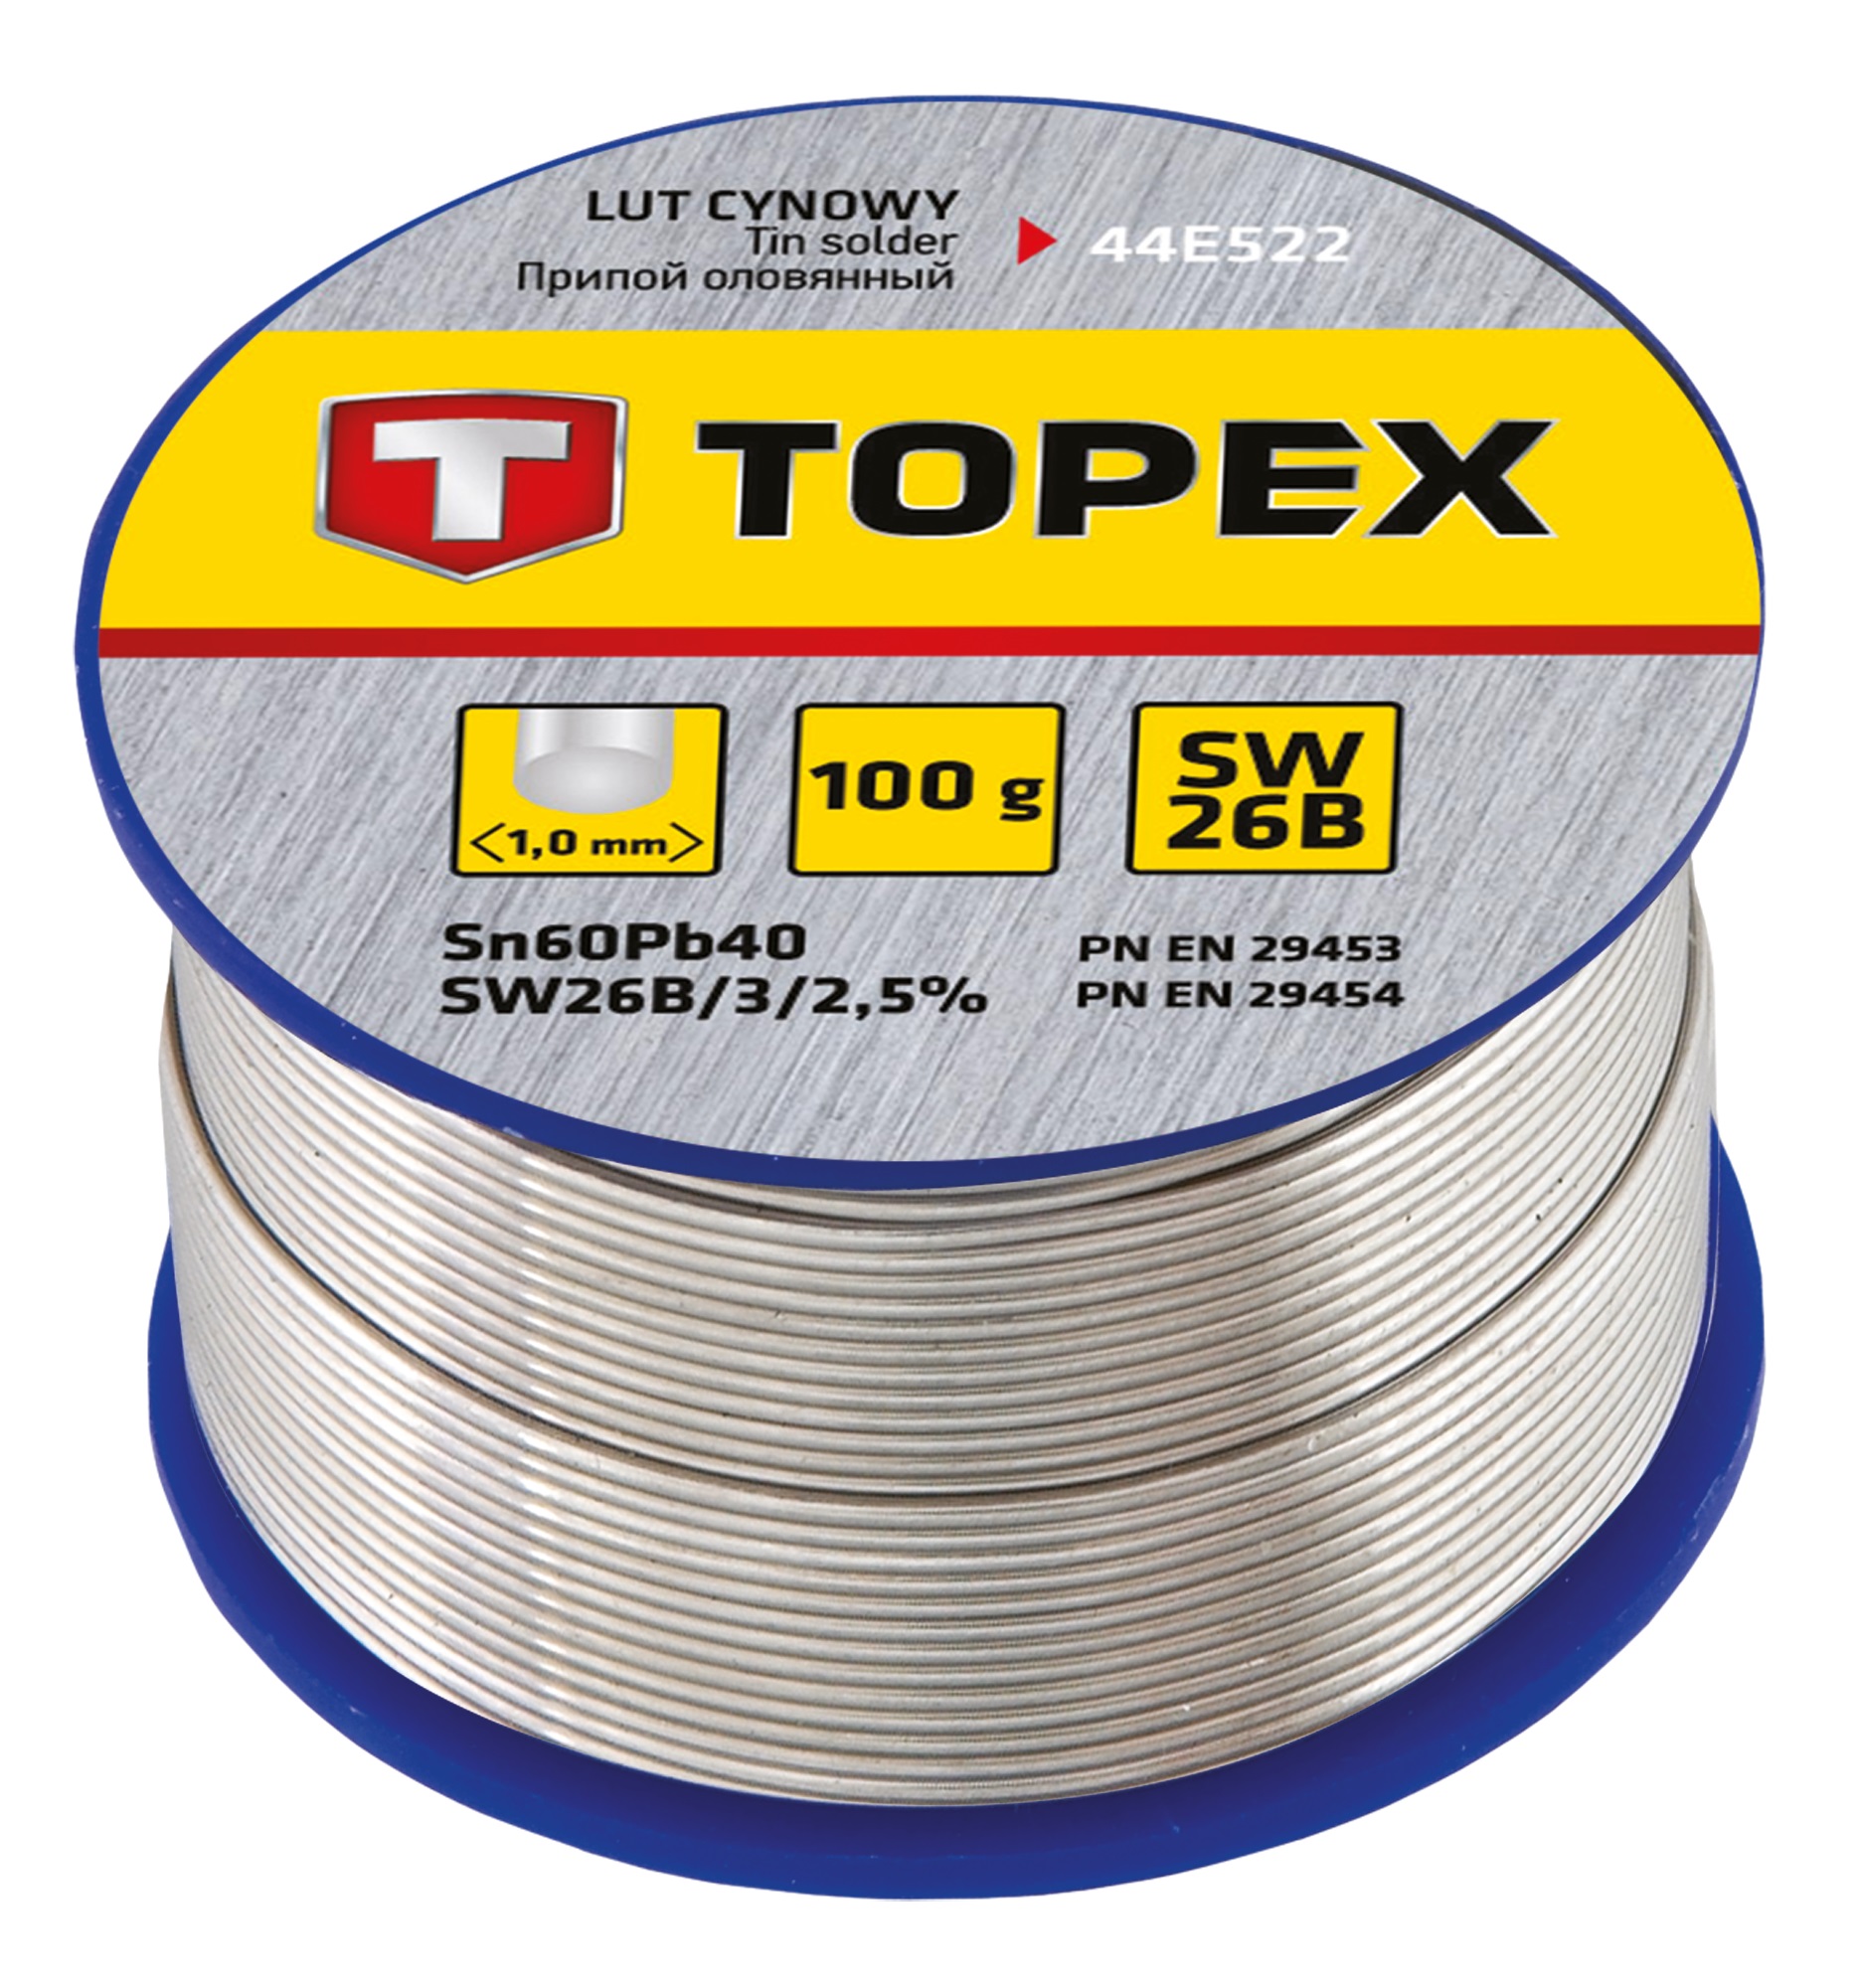 Припой для пайки Topex 44E522 в интернет-магазине, главное фото